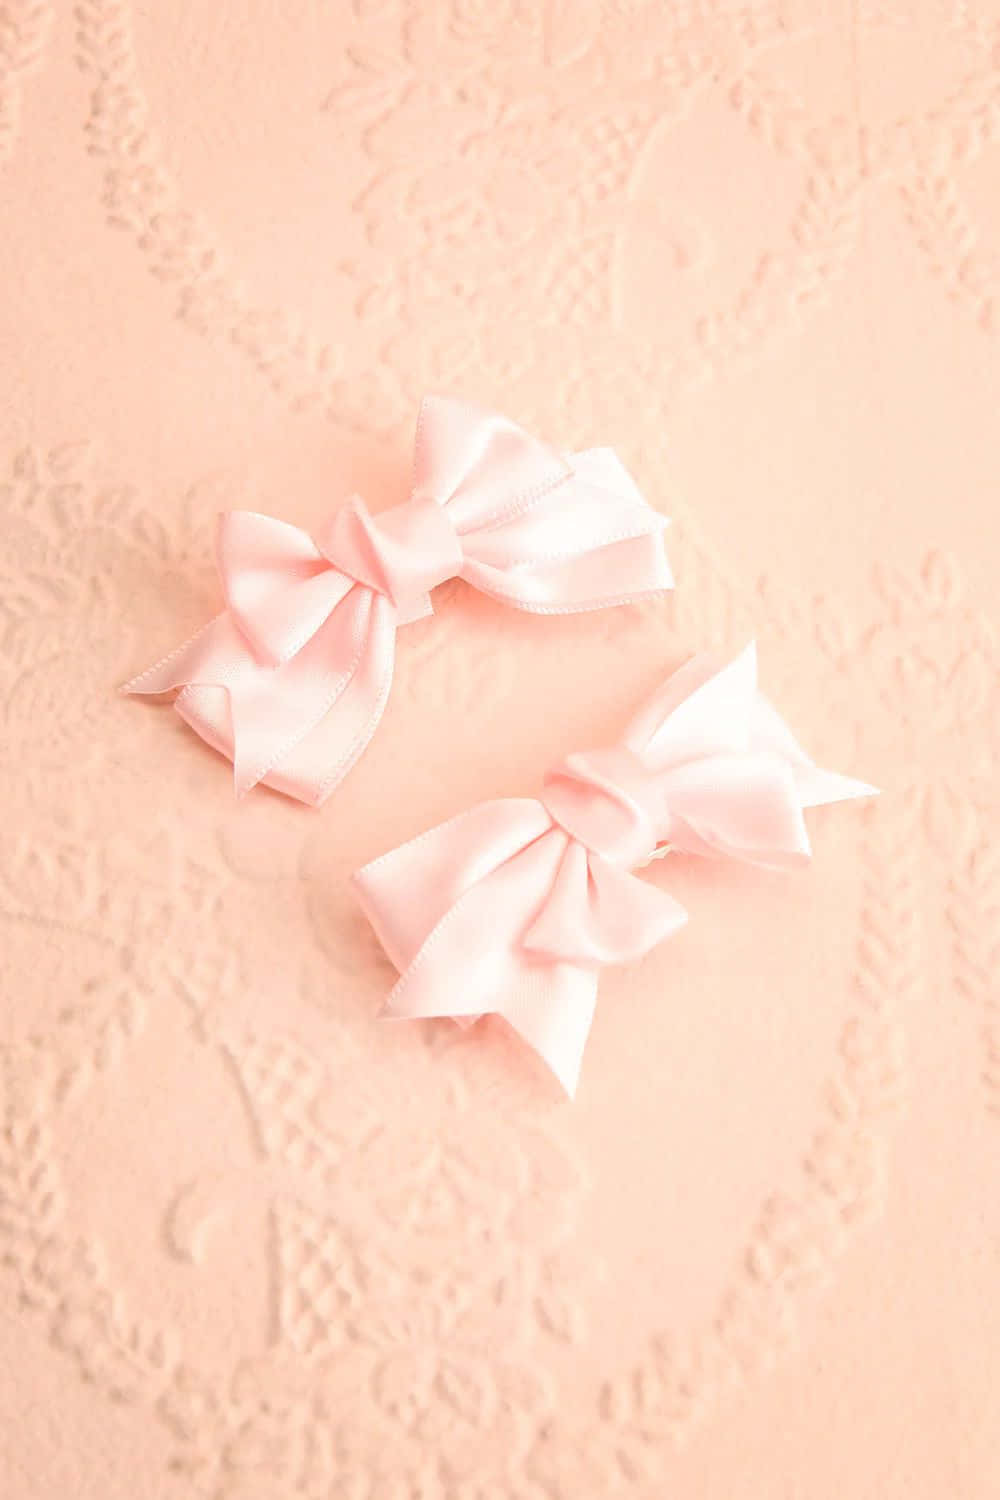 Pink Satin Bows Elegant Background Wallpaper